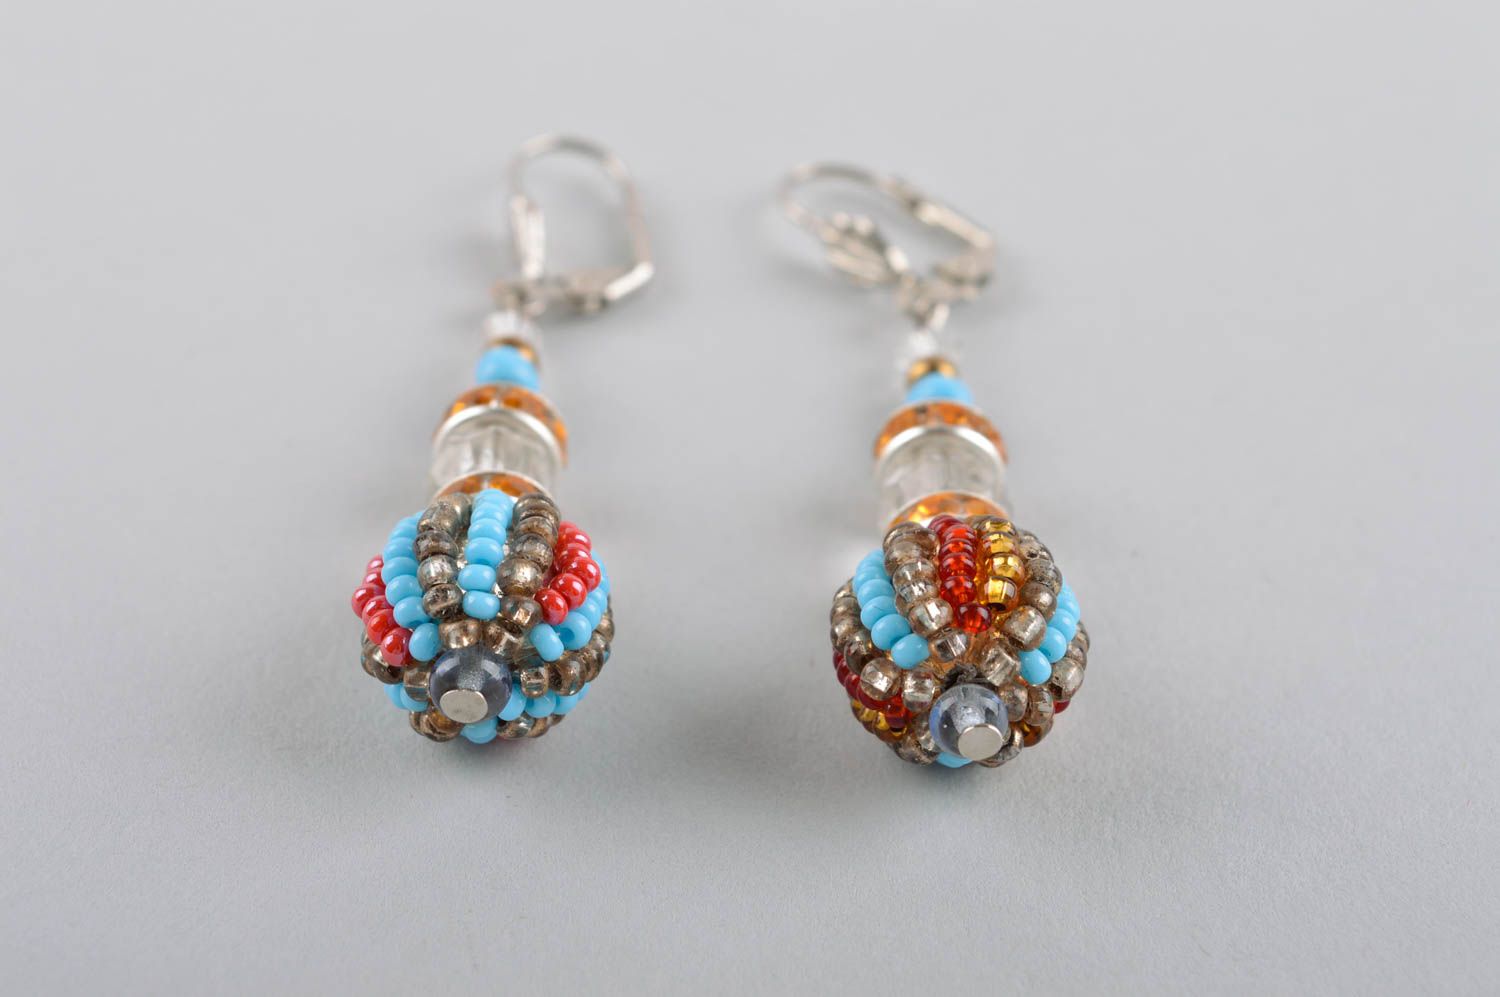 Handmade earrings ladies earrings handmade jewelry earrings for women gift ideas photo 4